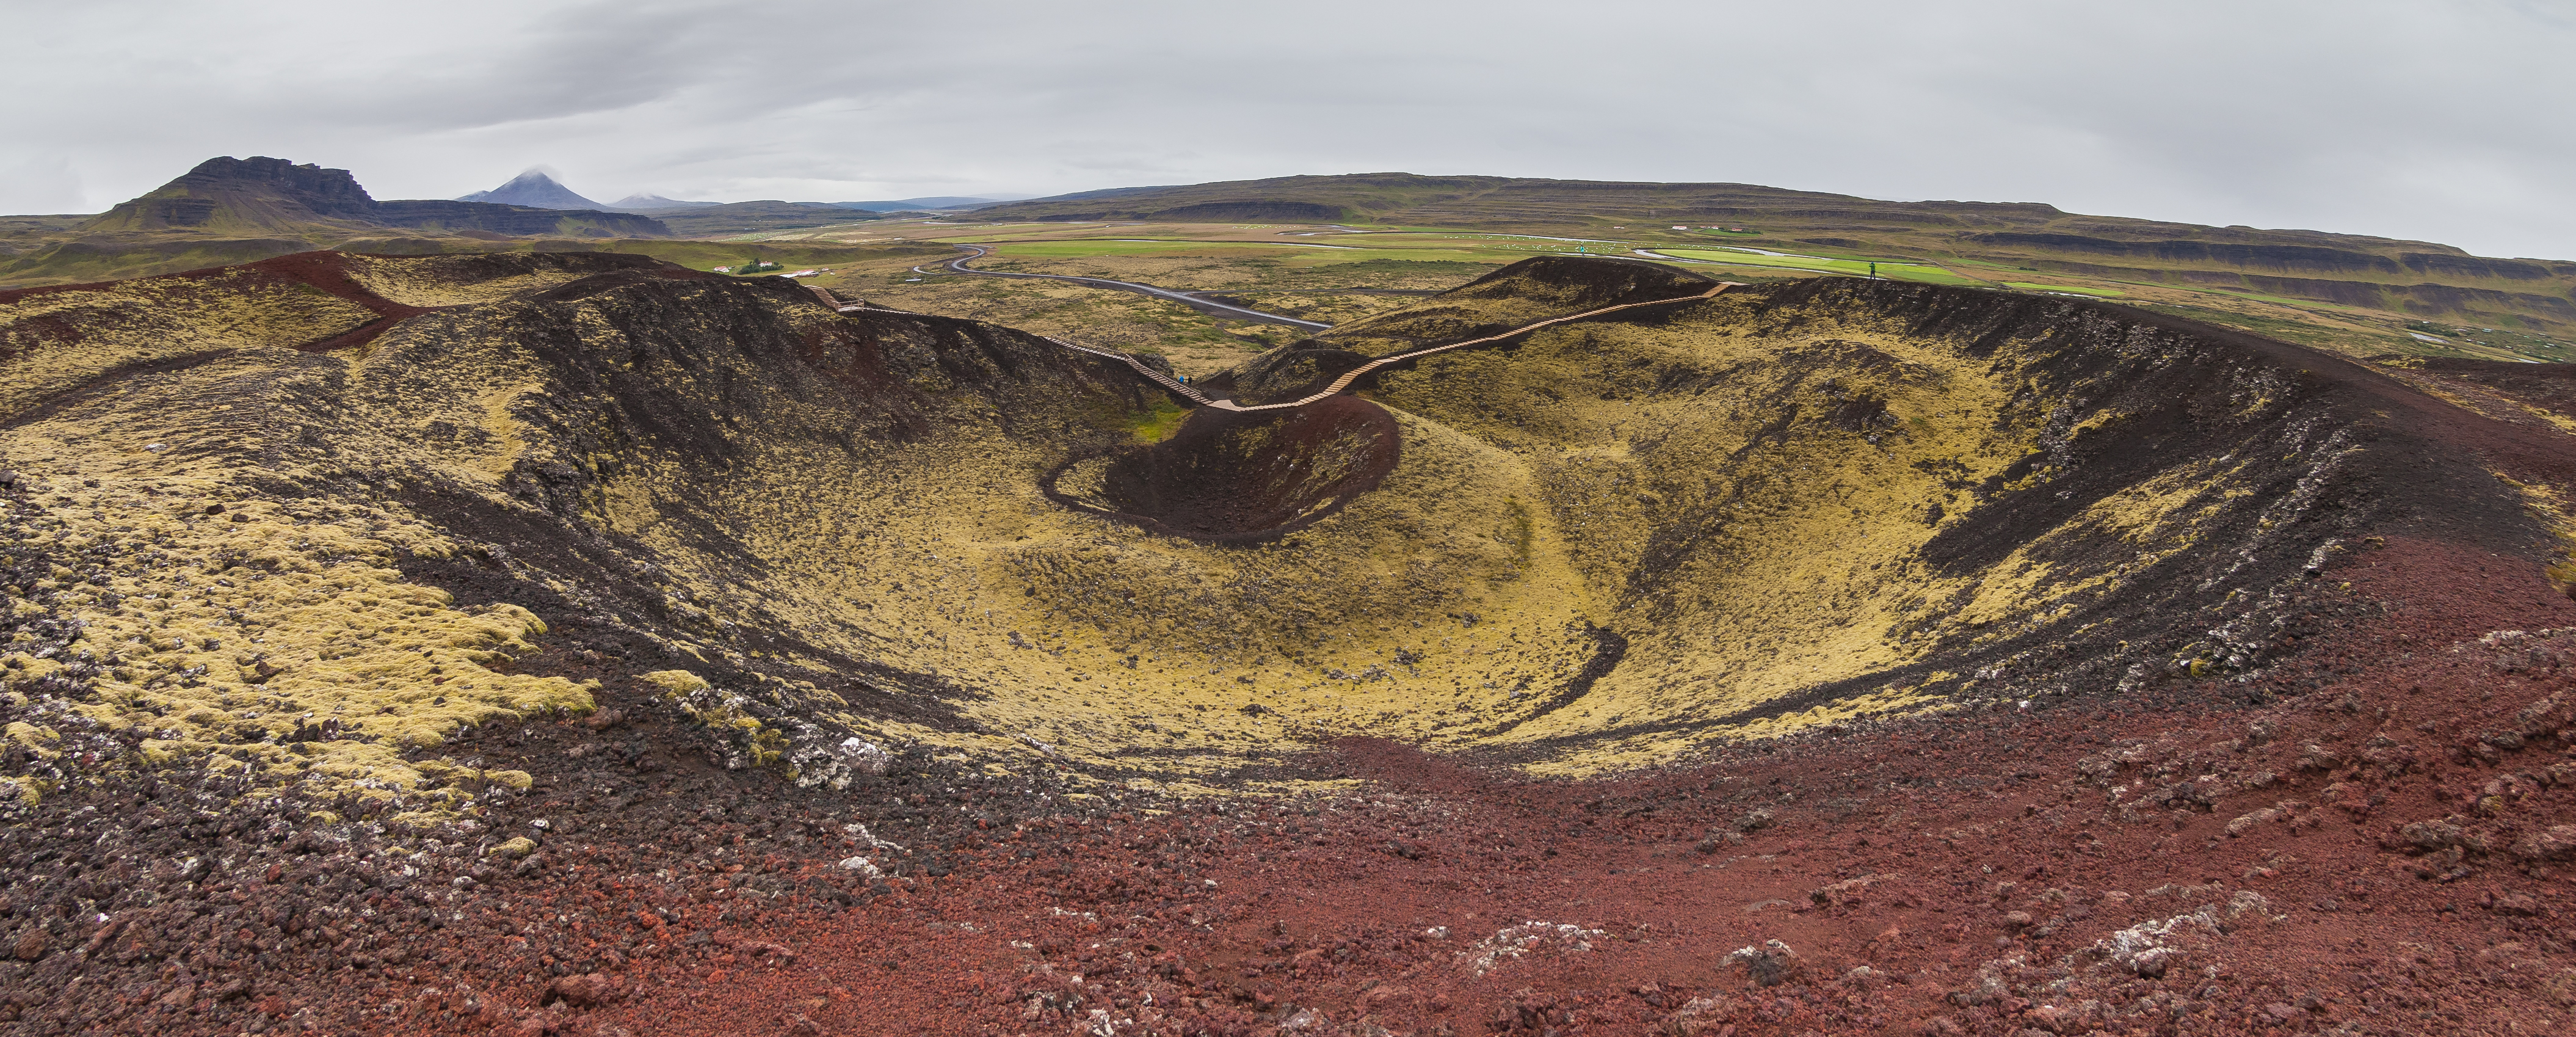 Cráter Stóri Grábrók, Vesturland, Islandia, 2014-08-15, DD 089